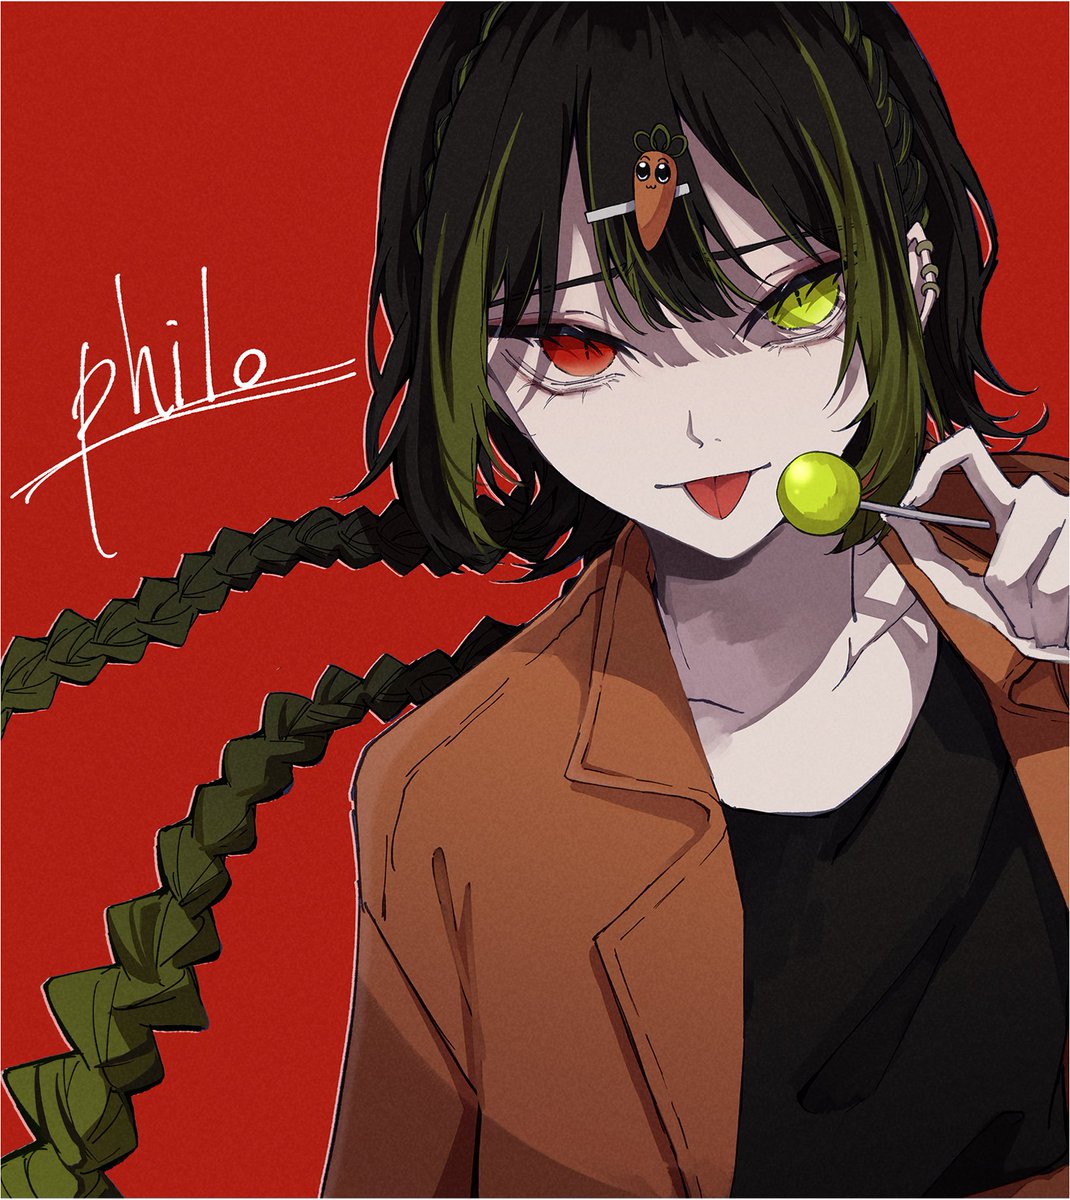 「philloさん 」|ORIHARAのイラスト